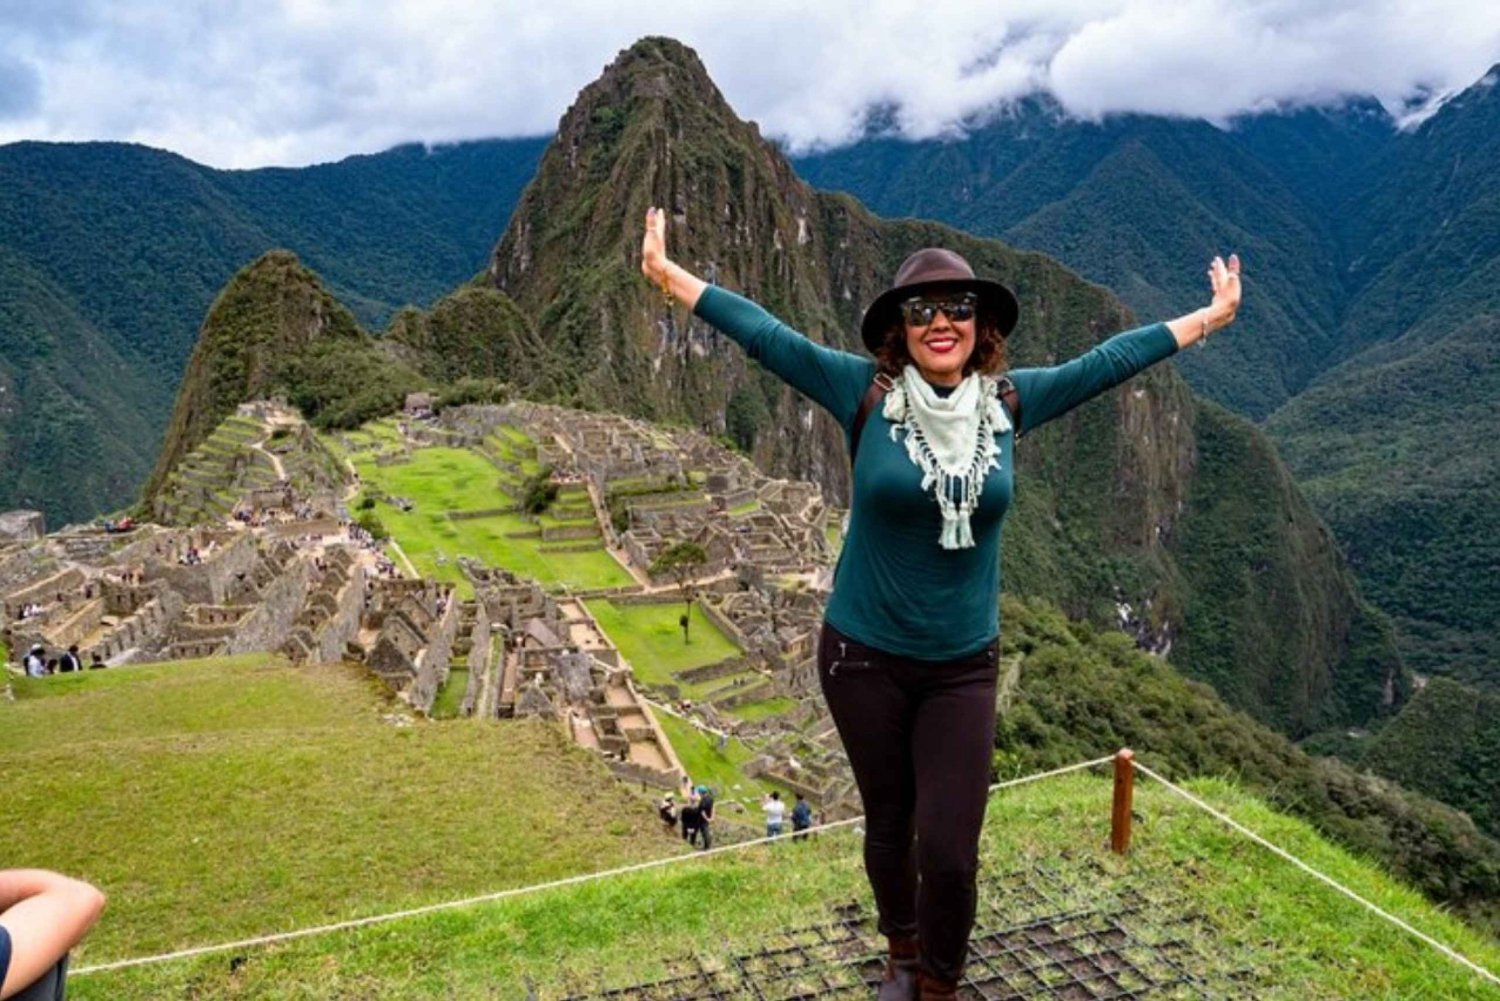 Cuscosta: 2 päivän matka Pyhään laaksoon ja Machu Picchuun